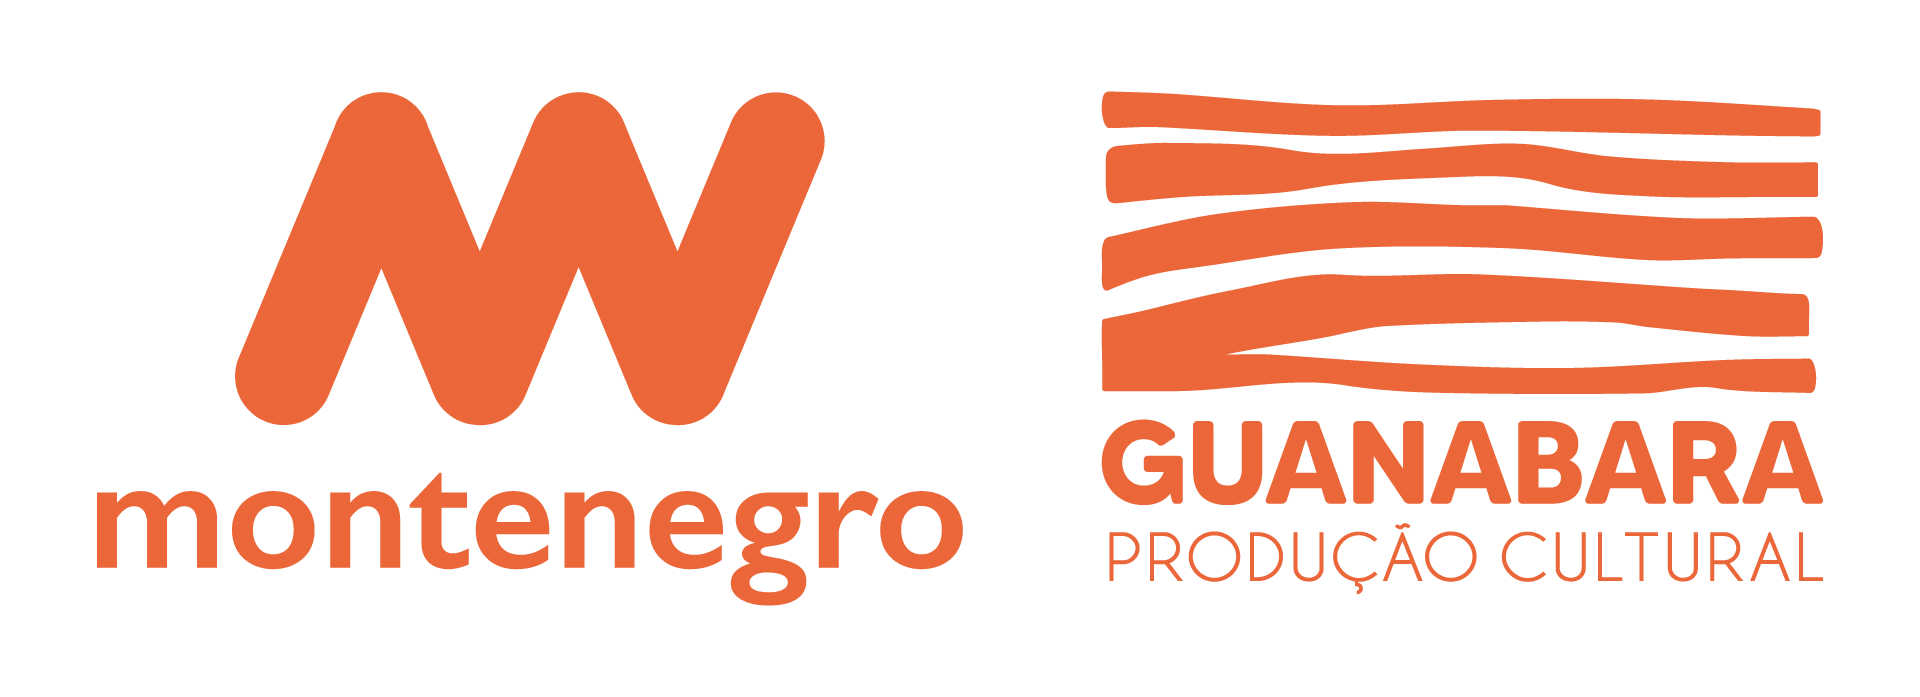 Logo da Montenegro Produções e da Guanabara